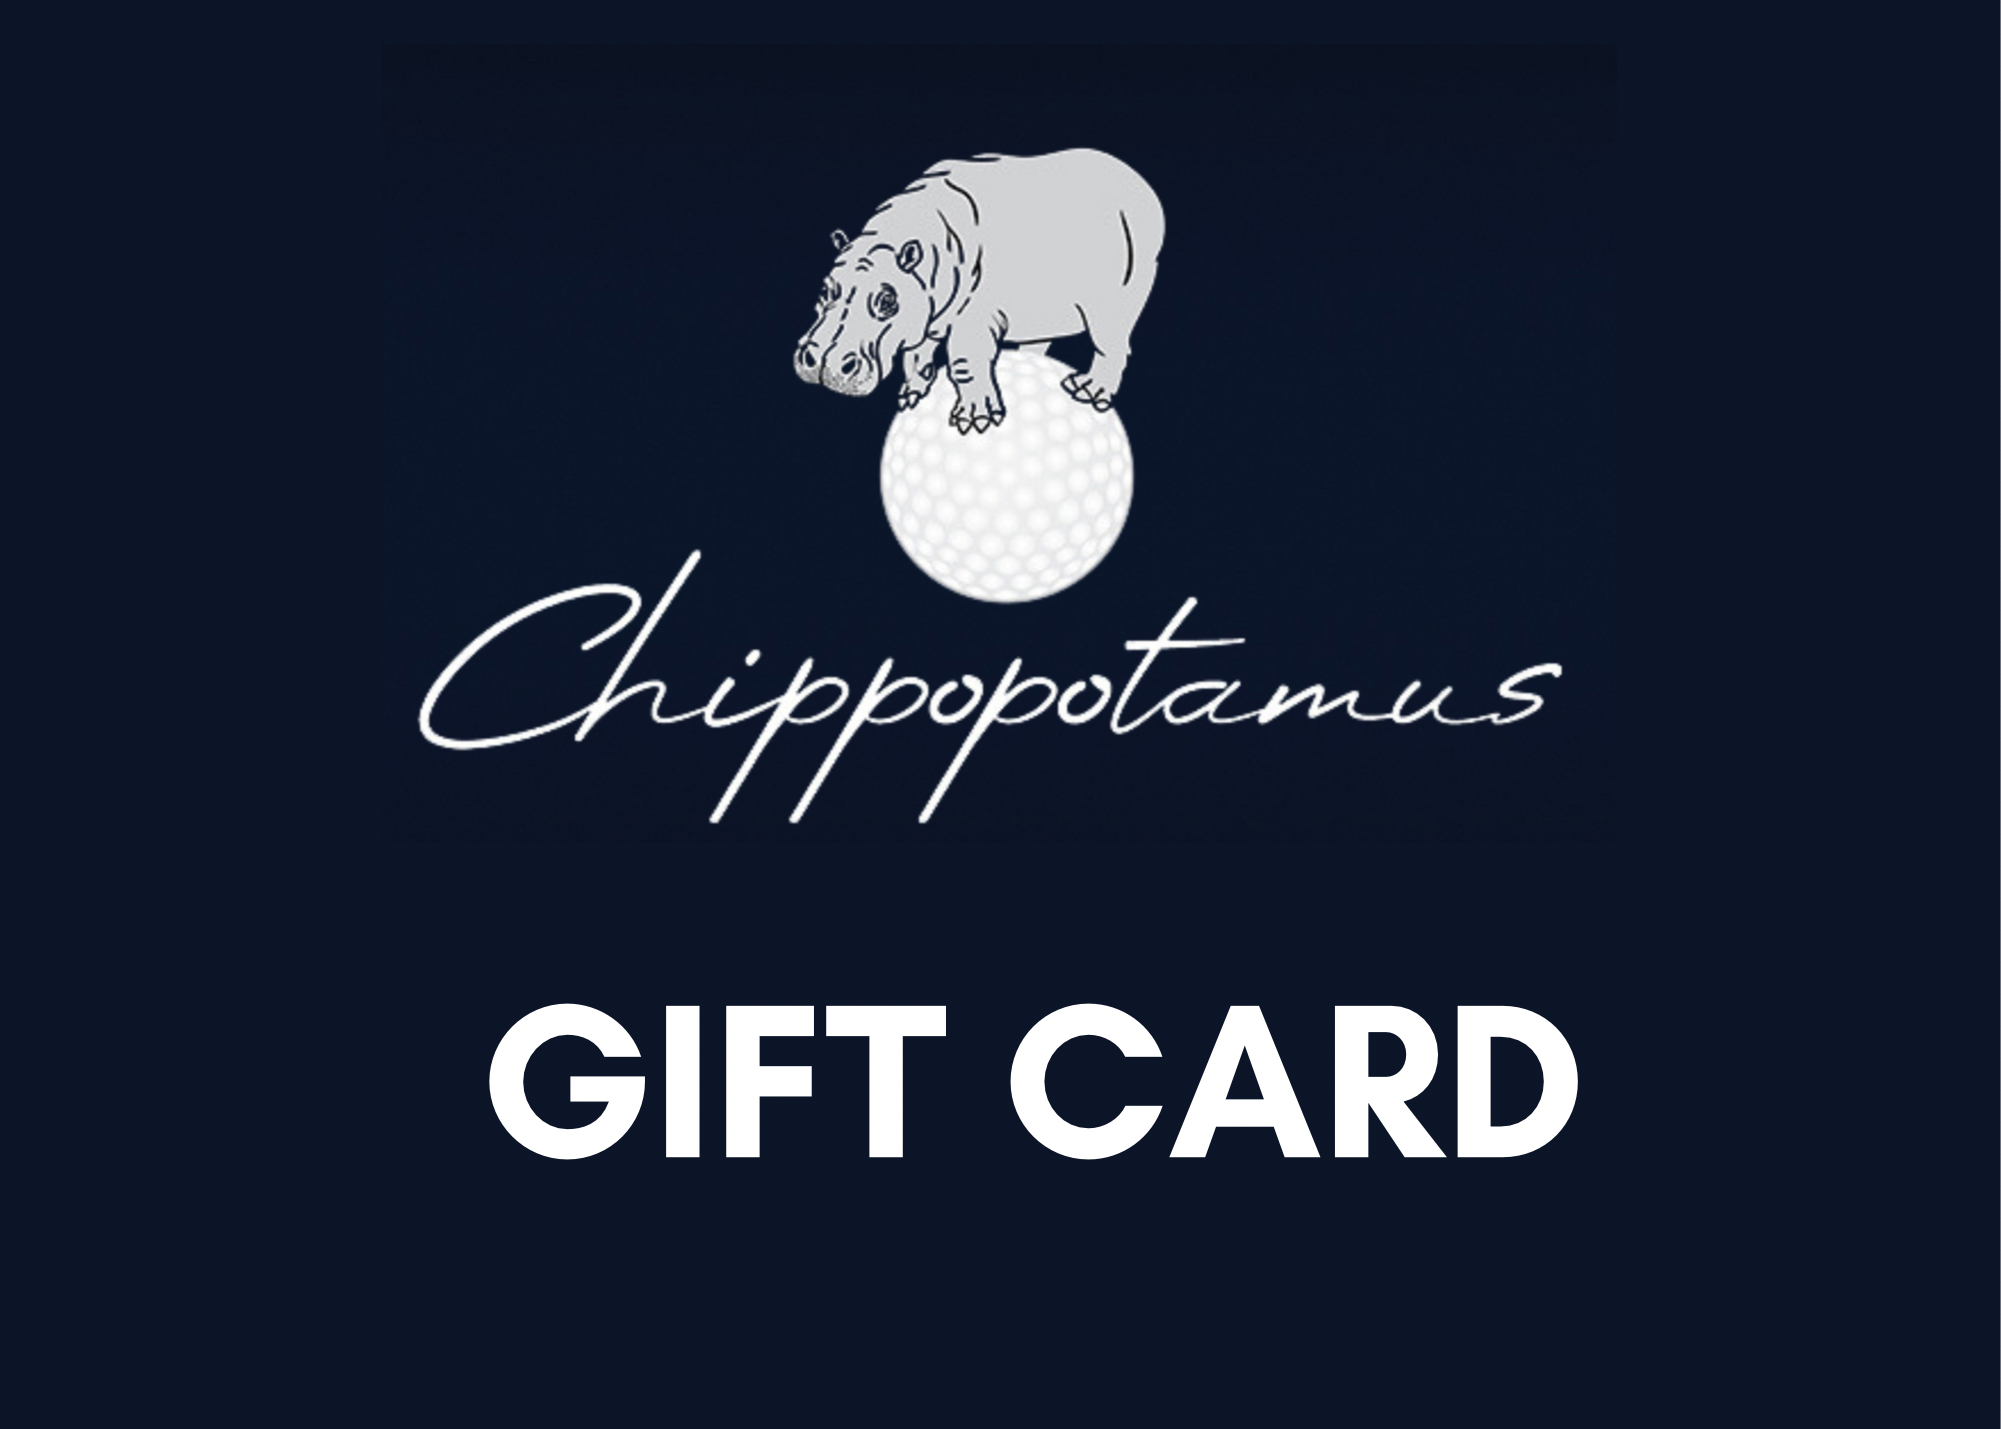 Chippopotamus gift card